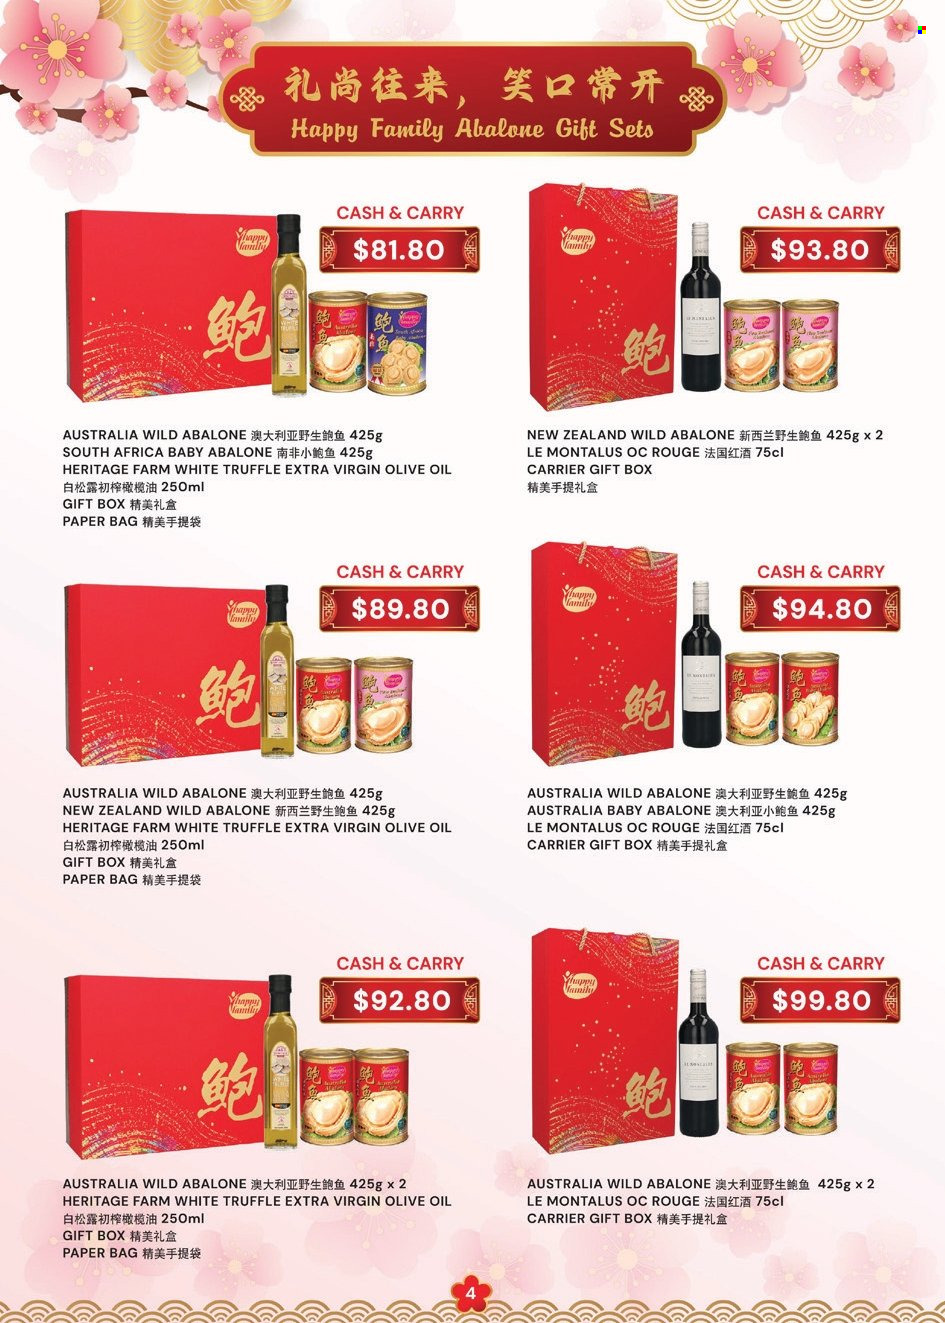 Sheng Siong catalogue - 28.12.2023 - 25.02.2024.